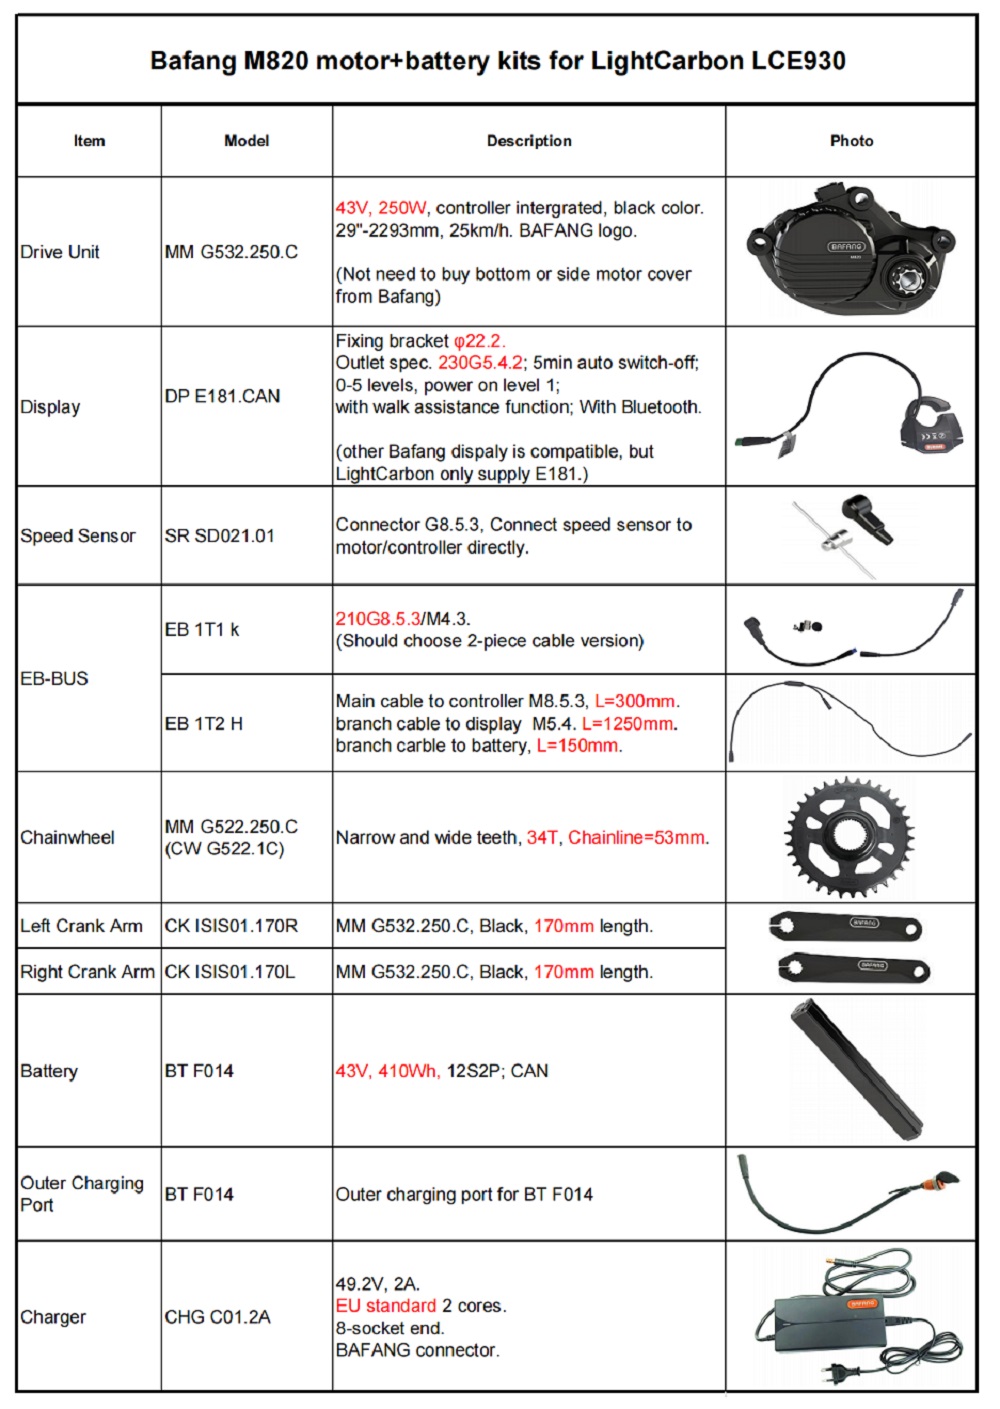 Spécifications des kits moteur + batterie Bafang M820 adaptés LCE930